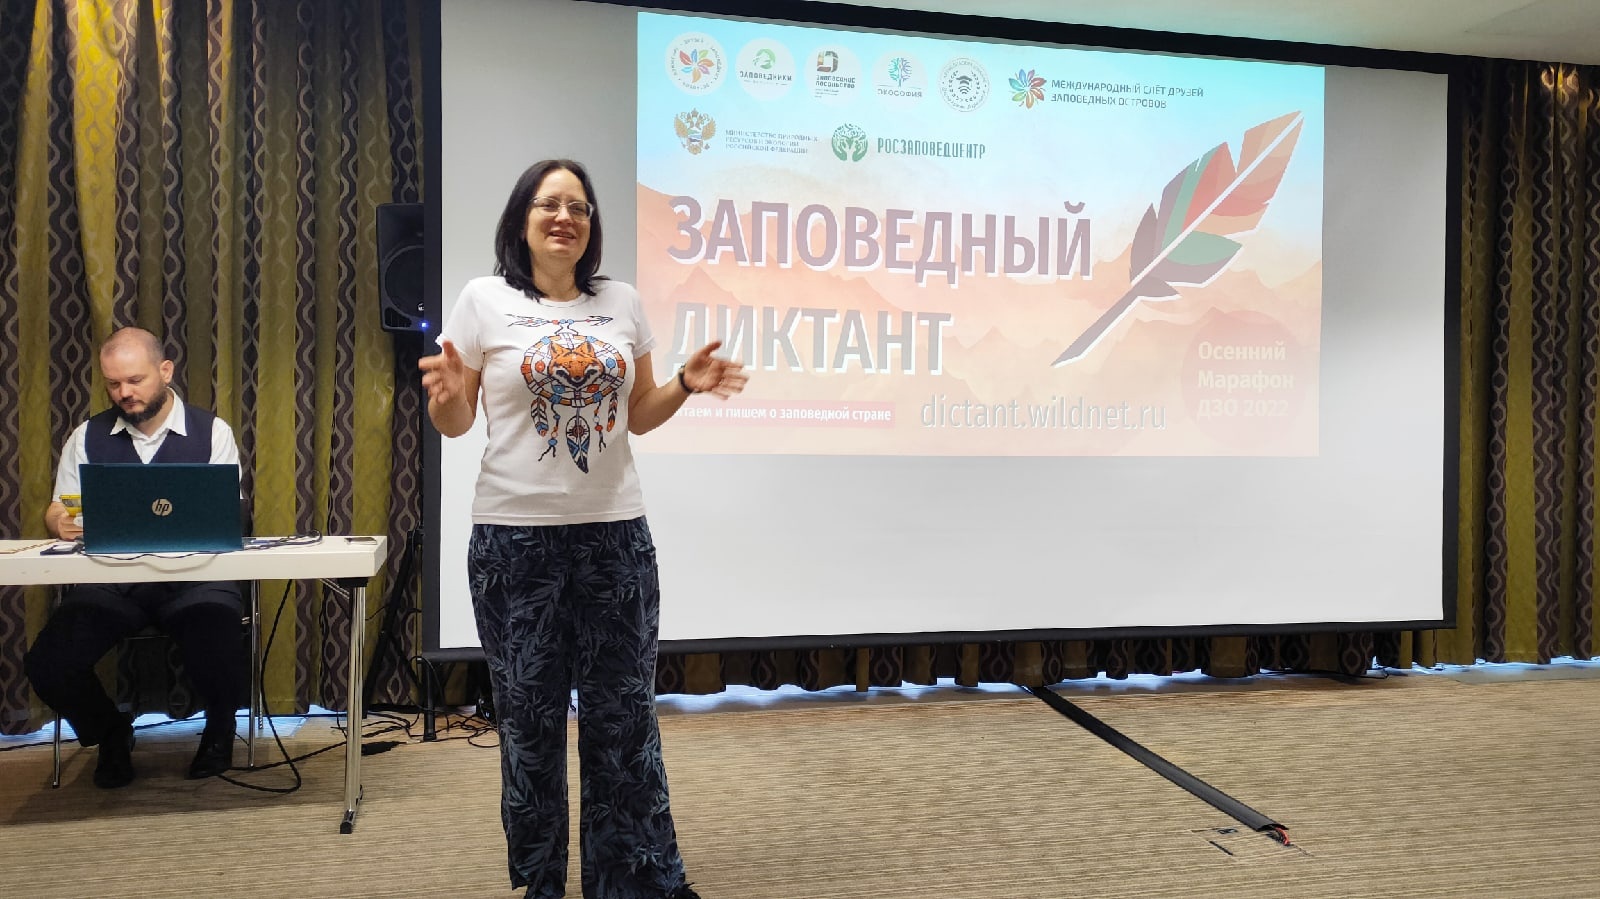 Любовь к природе и русскому языку: 350 человек приняли участие во Всероссийском заповедном диктанте  - фото 4